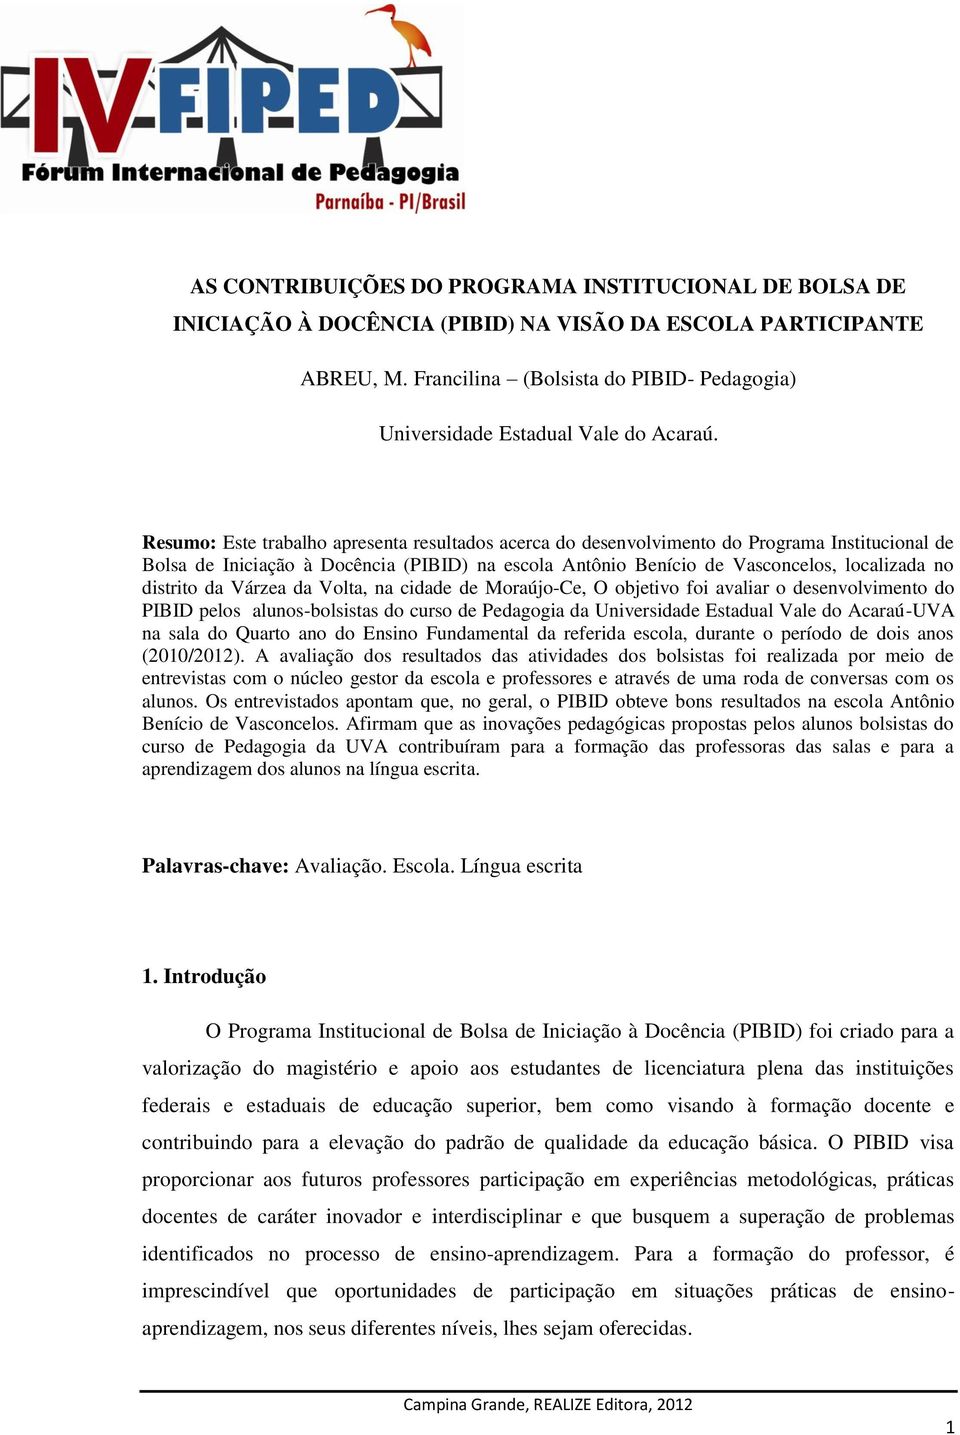 Resumo: Este trabalho apresenta resultados acerca do desenvolvimento do Programa Institucional de Bolsa de Iniciação à Docência (PIBID) na escola Antônio Benício de Vasconcelos, localizada no